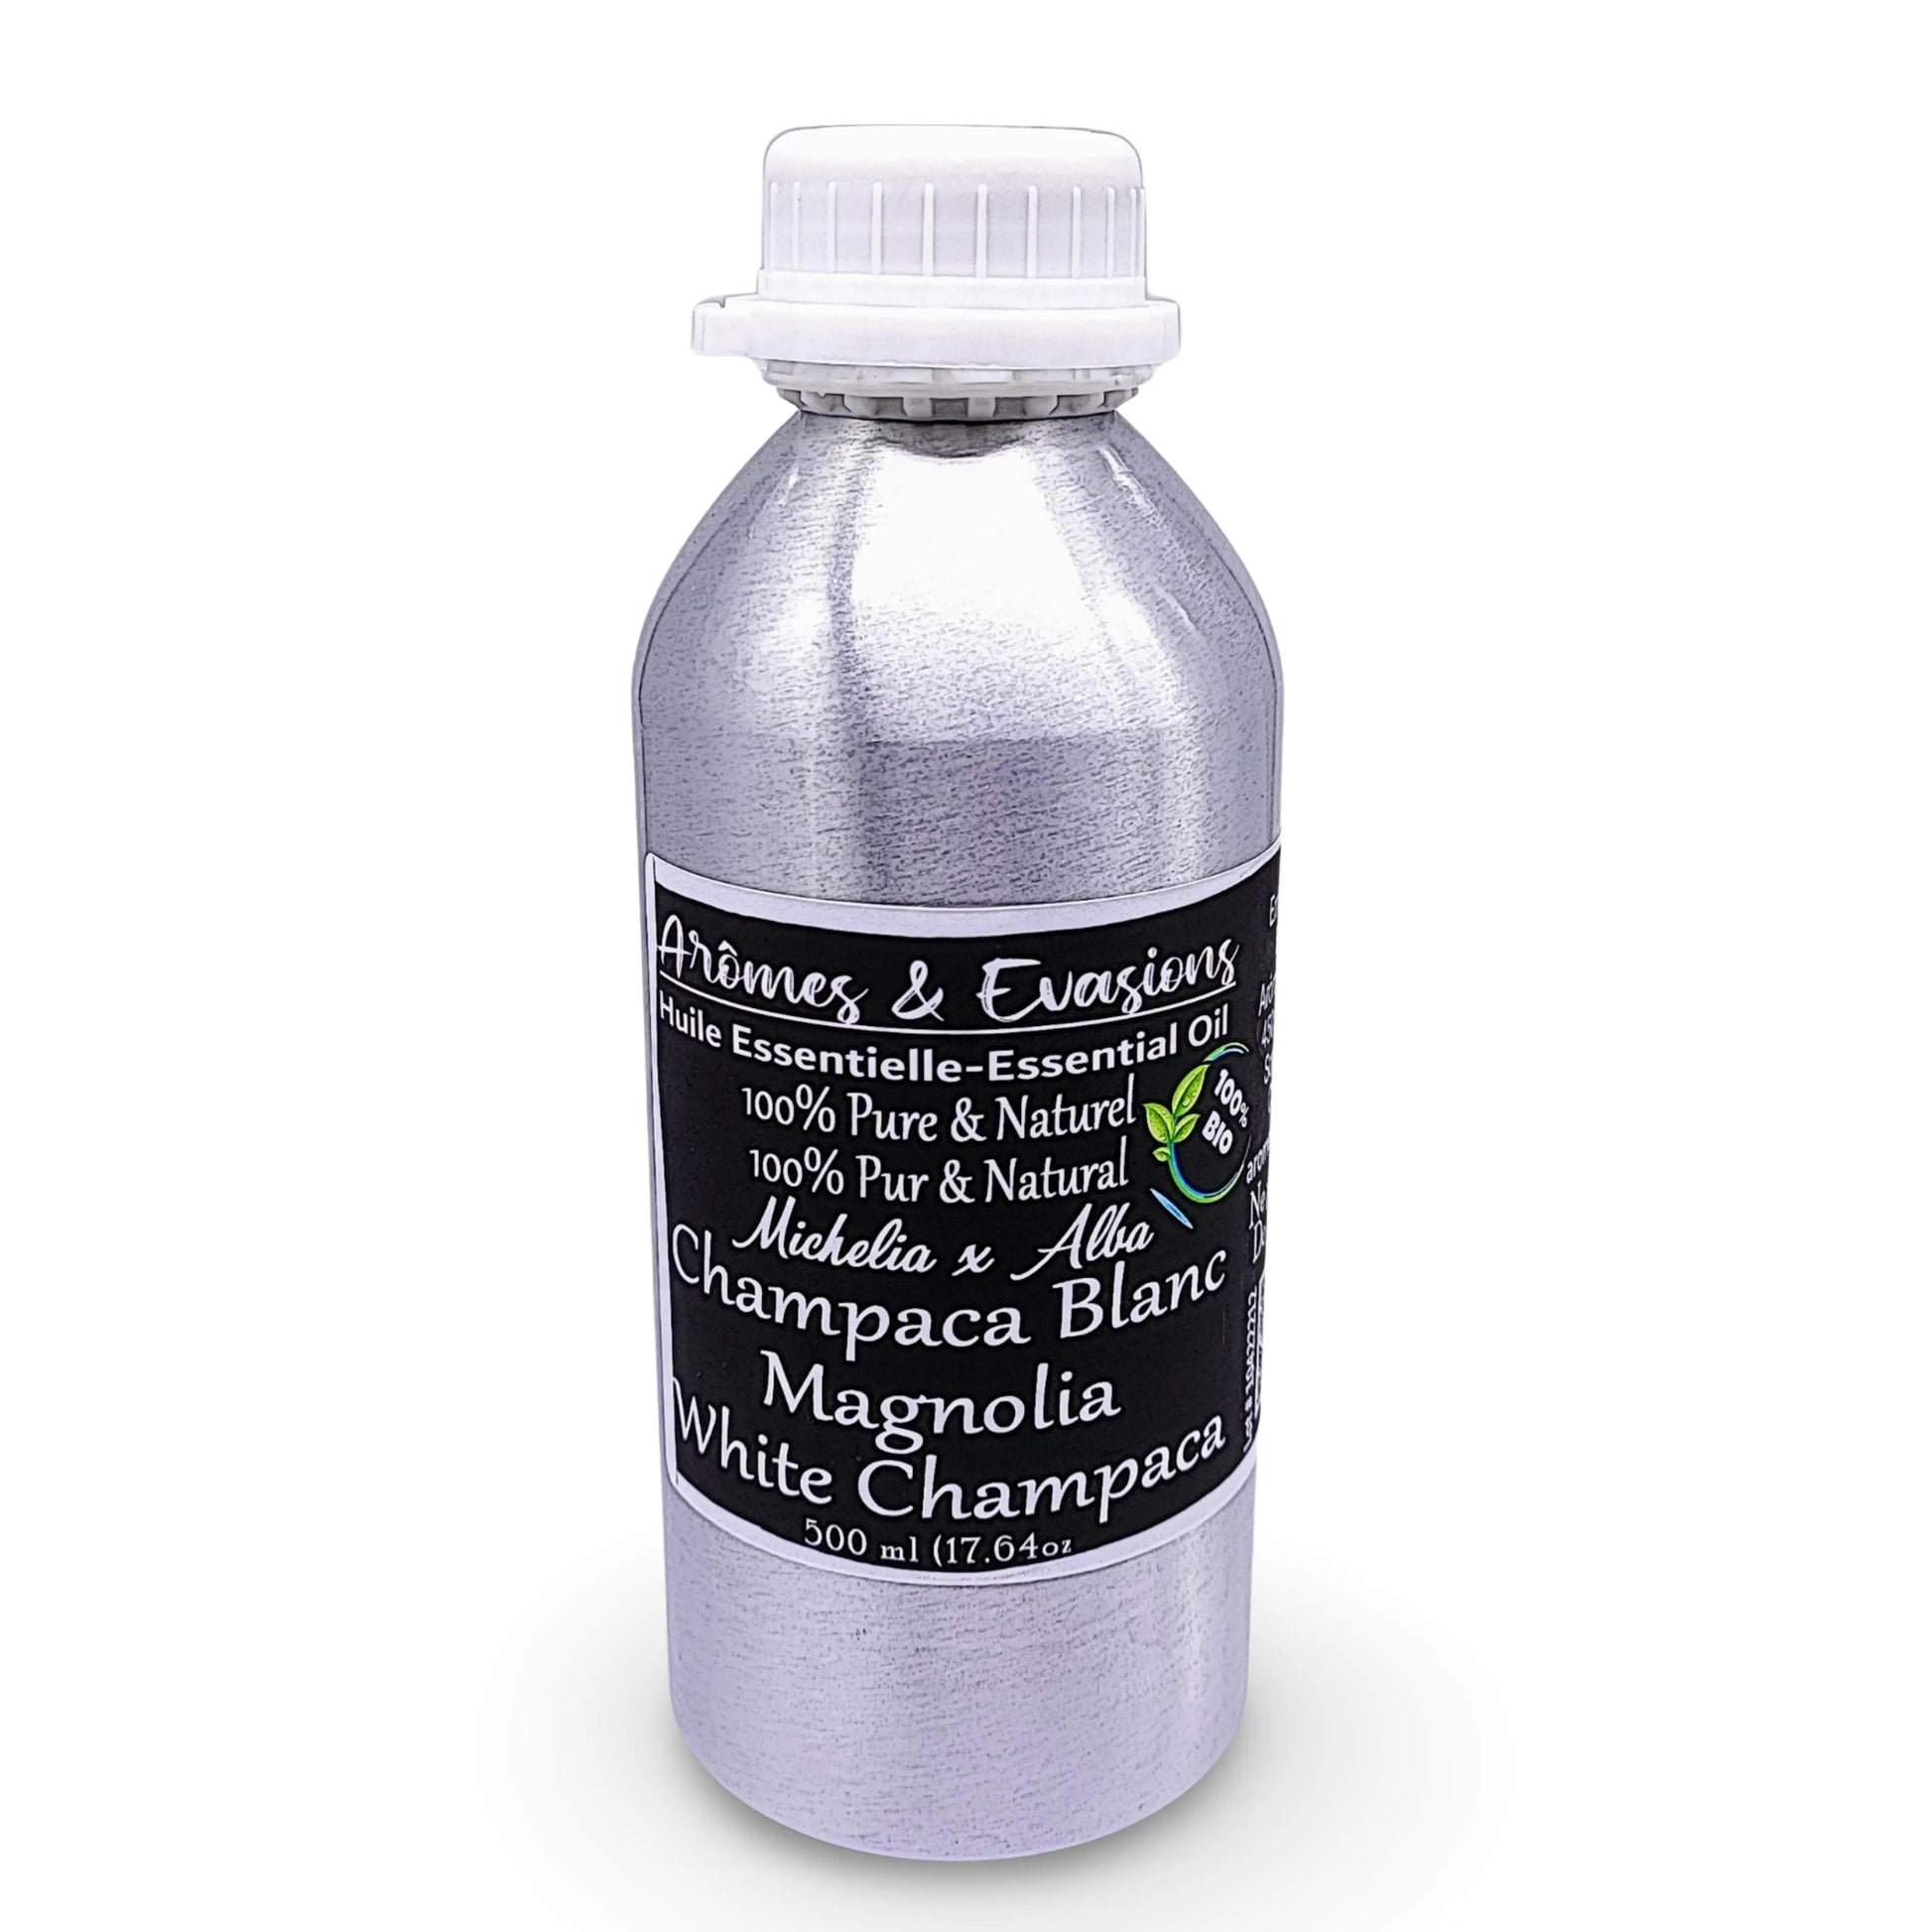 Essential Oil -Magnolia /White Champaca (Michelia x Alba) 500 ml